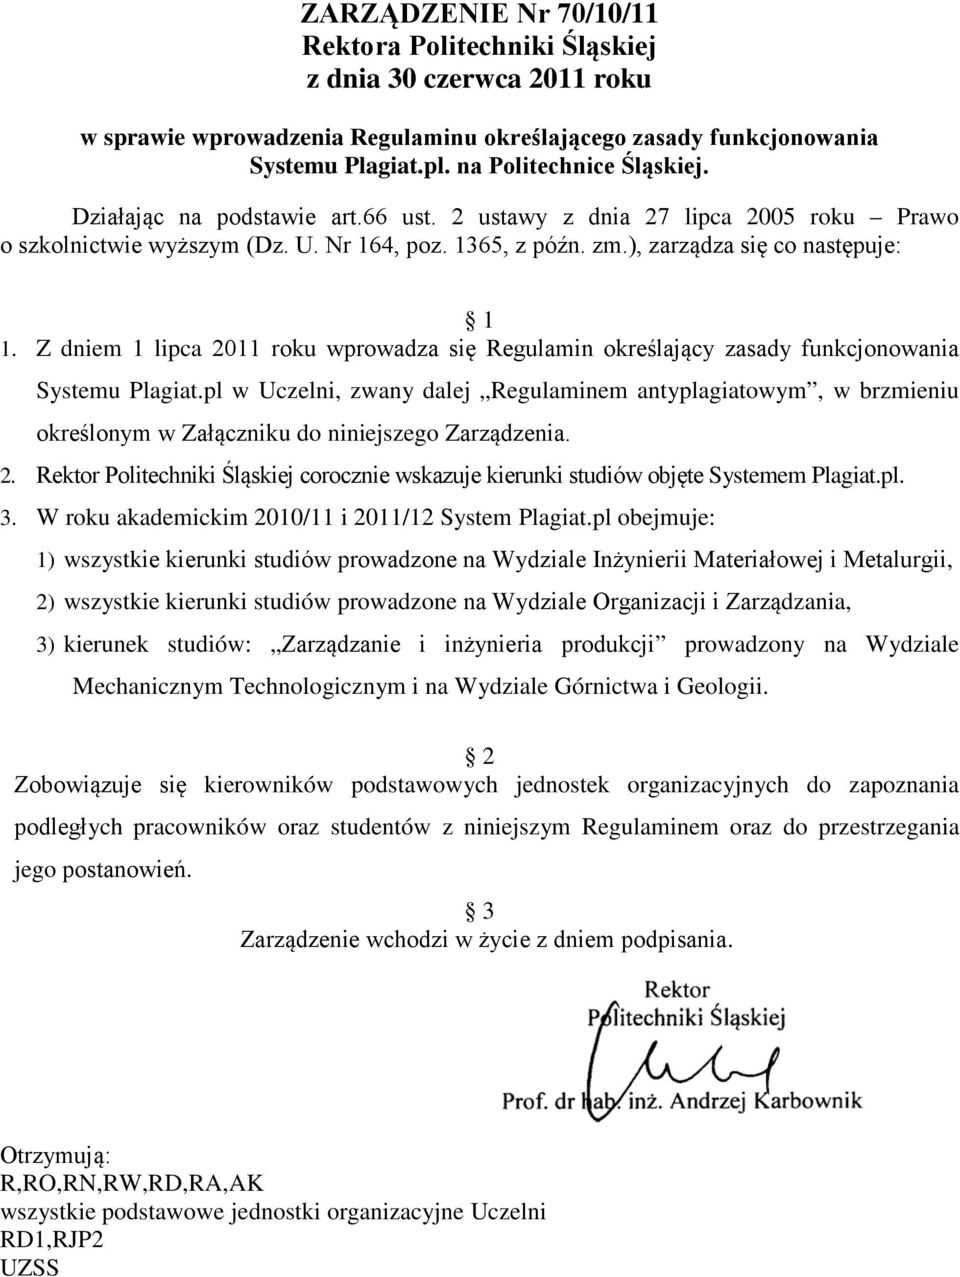 Z dniem 1 lipca 2011 roku wprowadza się Regulamin określający zasady funkcjonowania Systemu Plagiat.